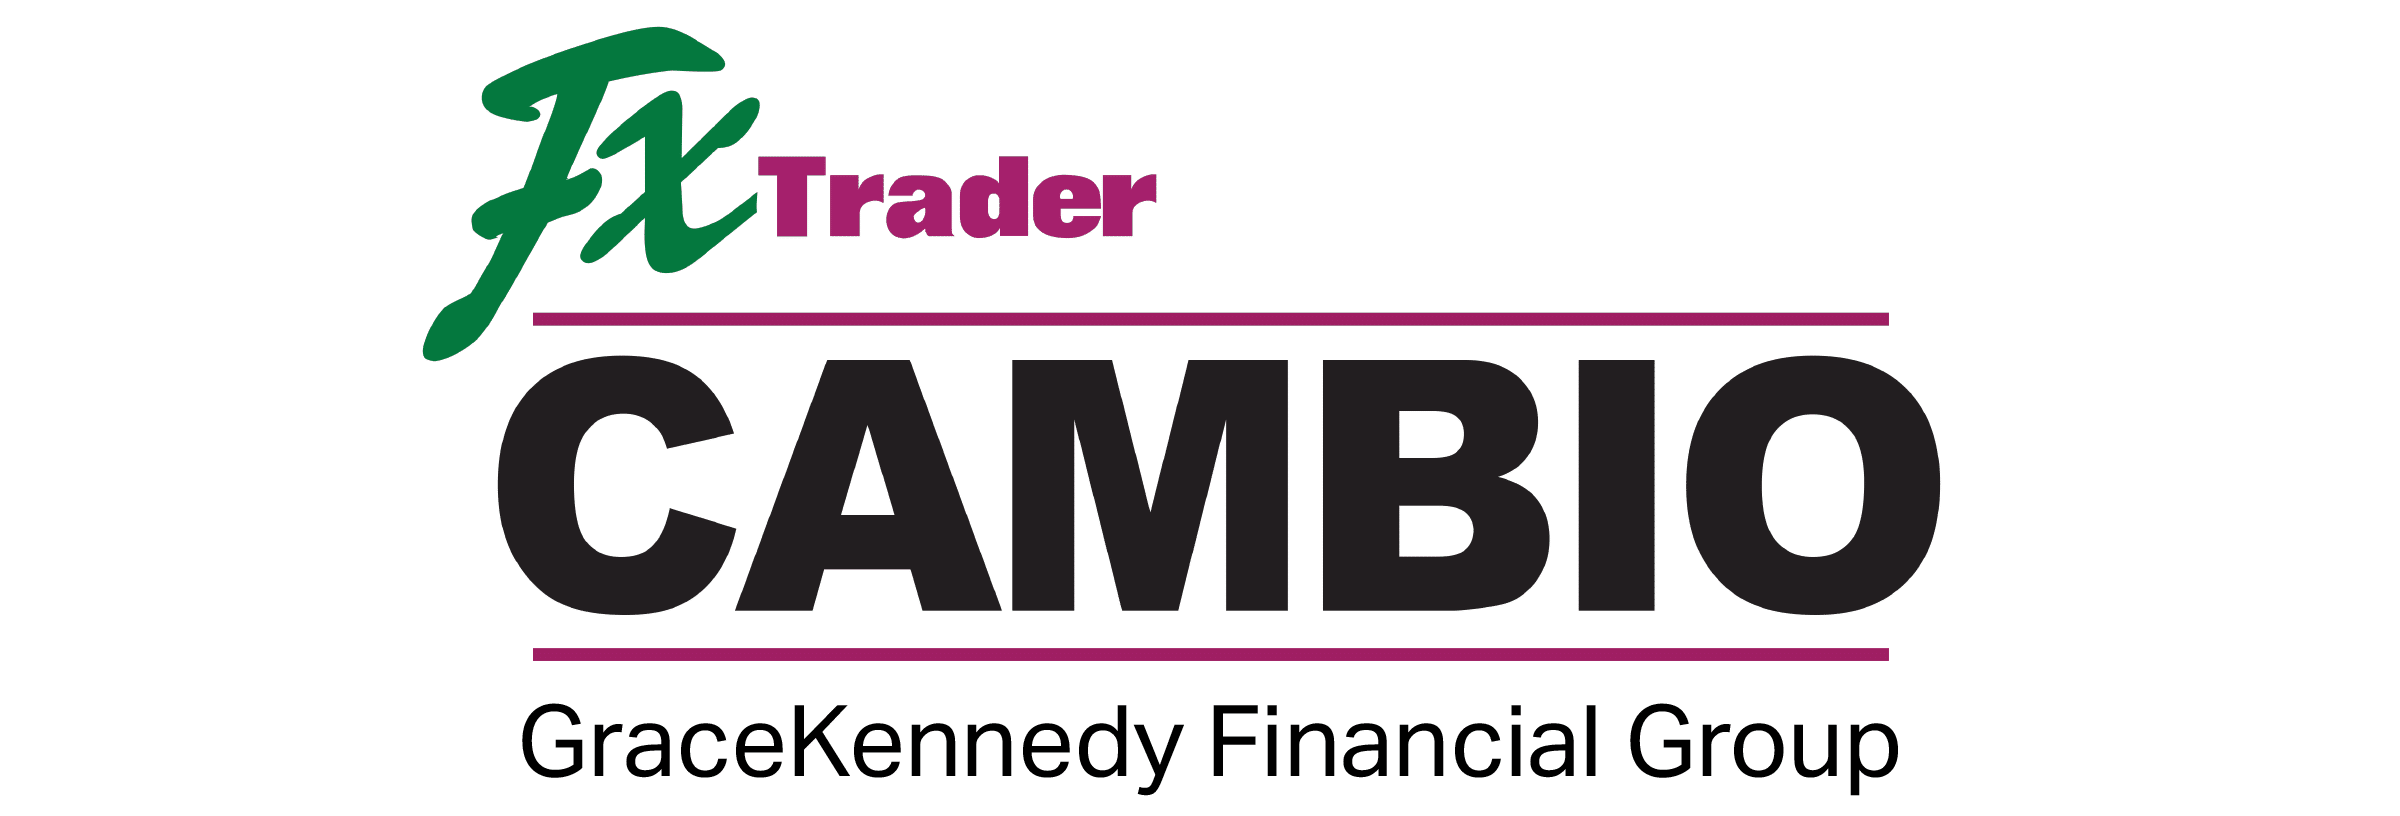 FX Trader logo